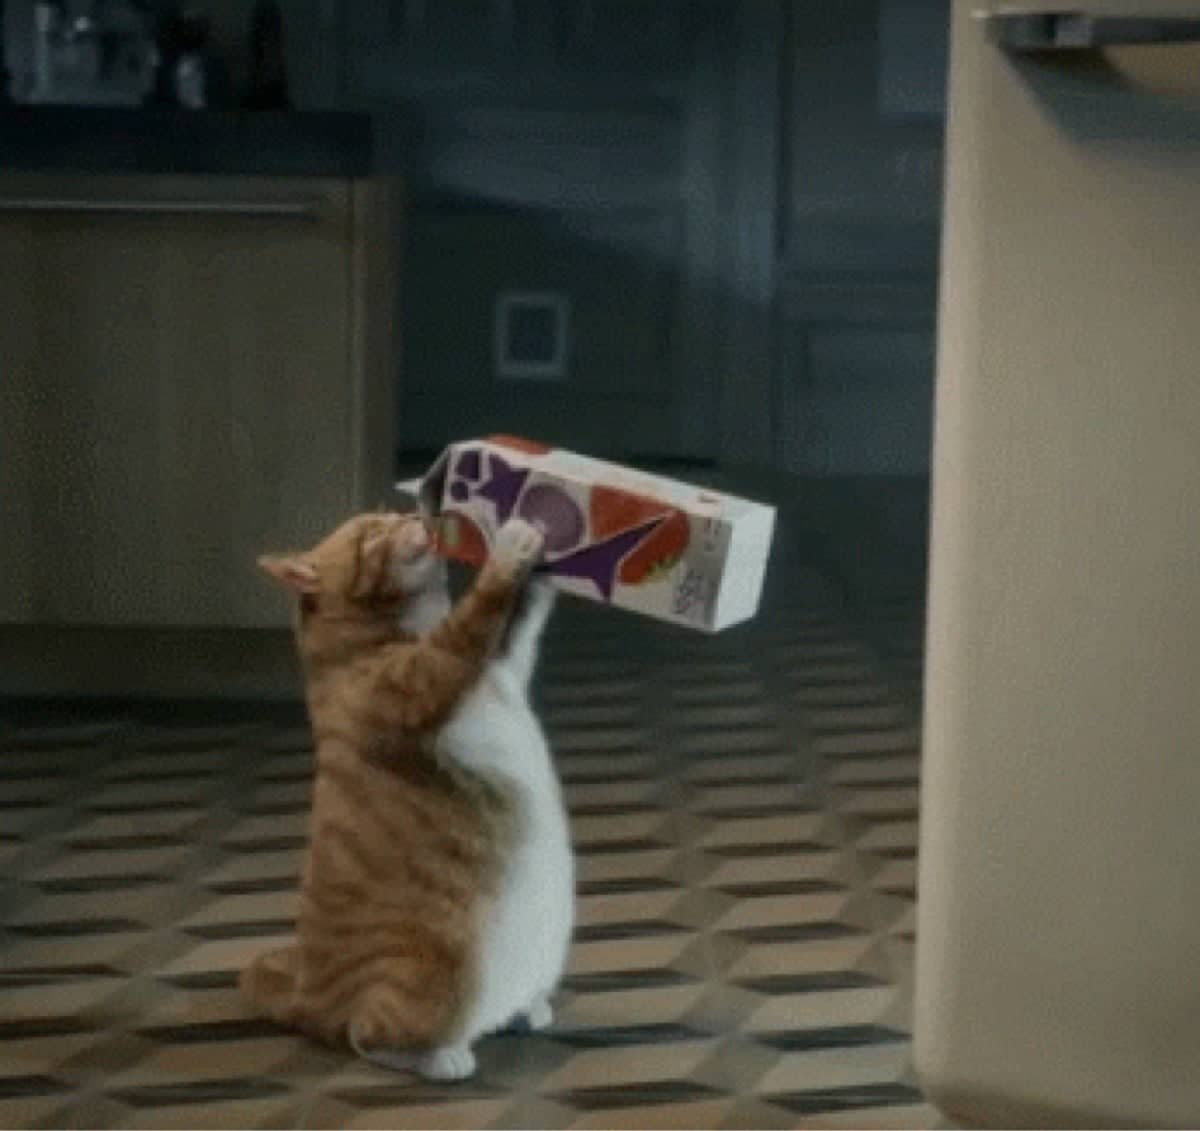 The best way to drink milk : cat